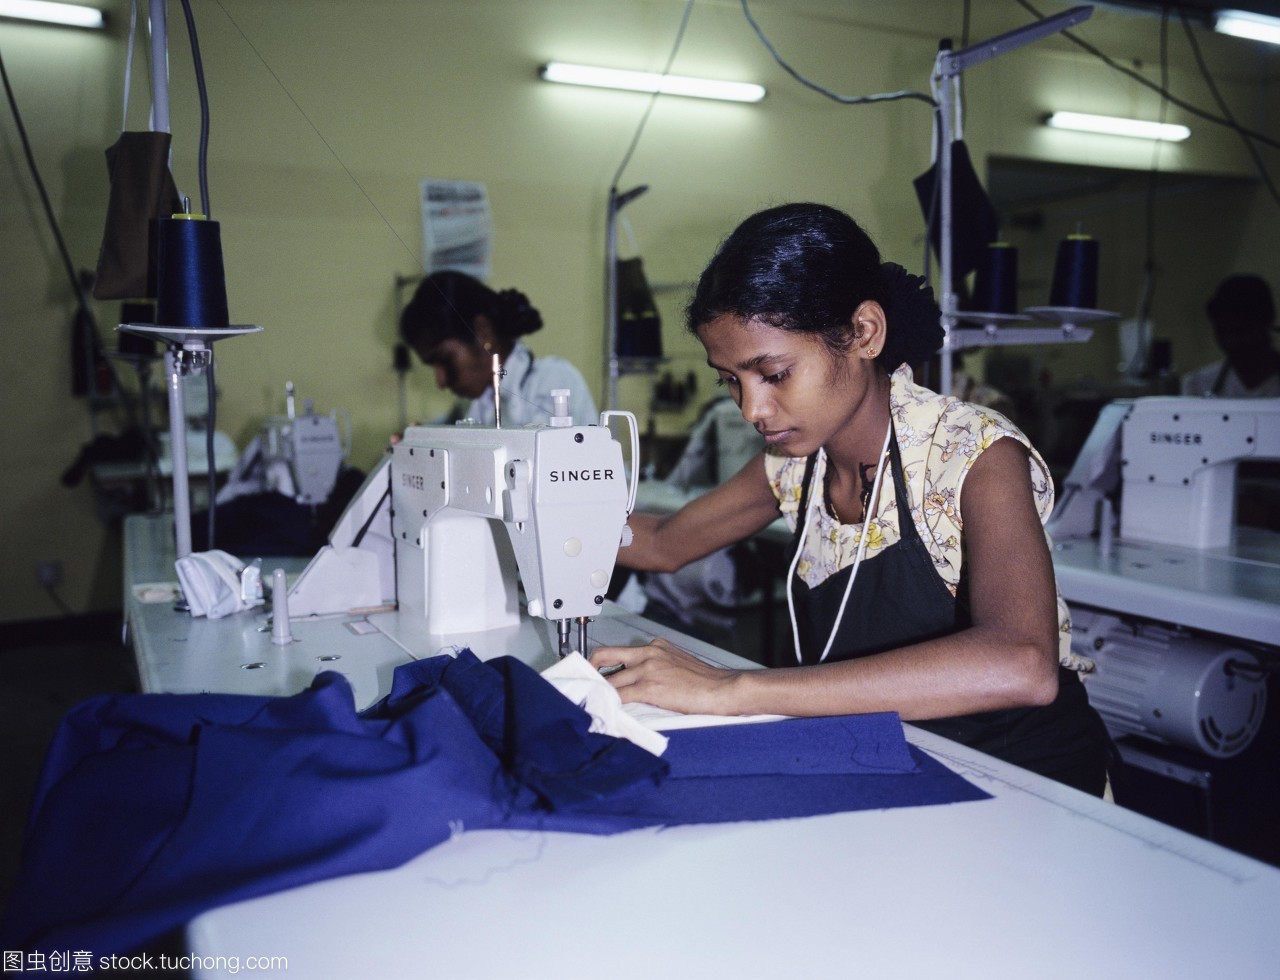 服装制造。缝纫衣服的女人在工厂。拍摄在科伦坡斯里兰卡。